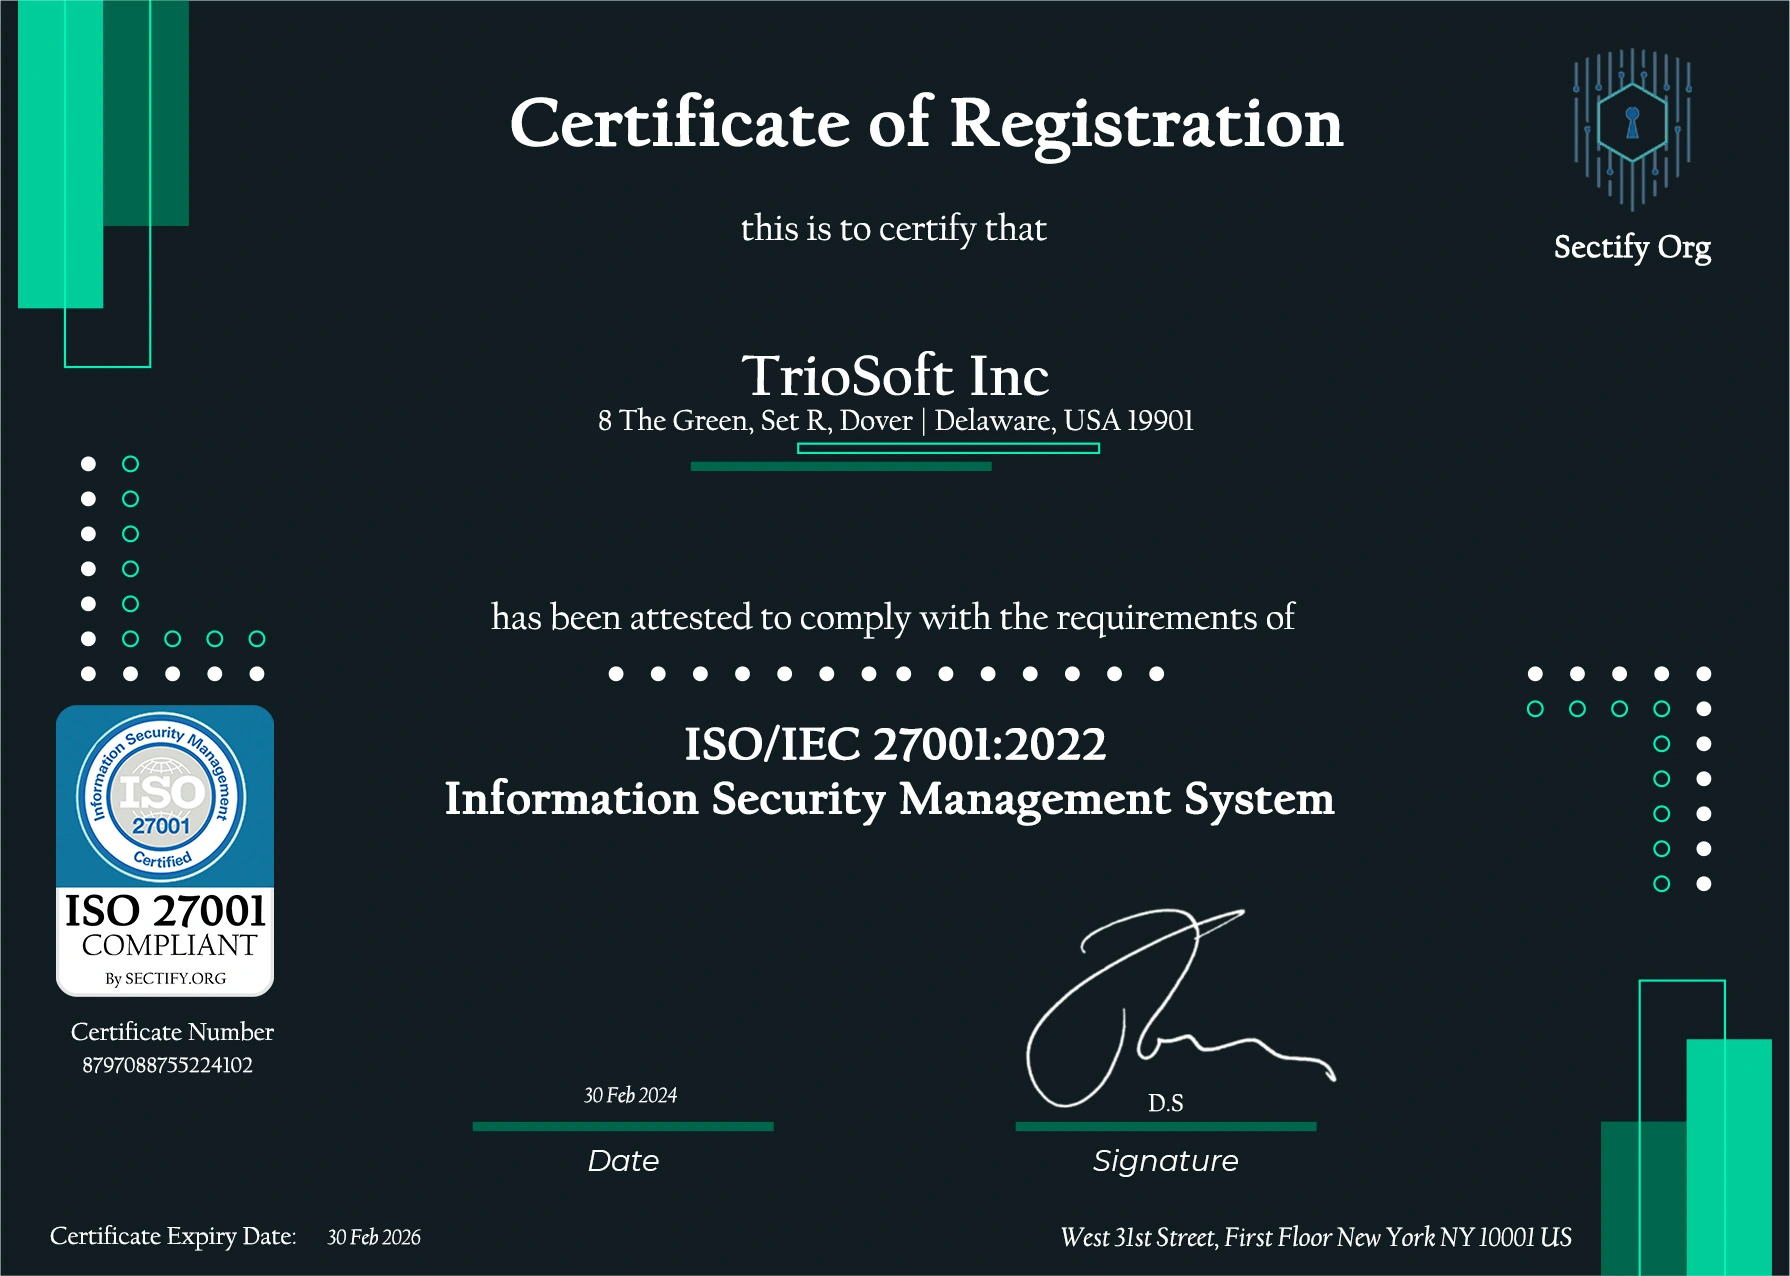 Trio's ISO 27001 certificate